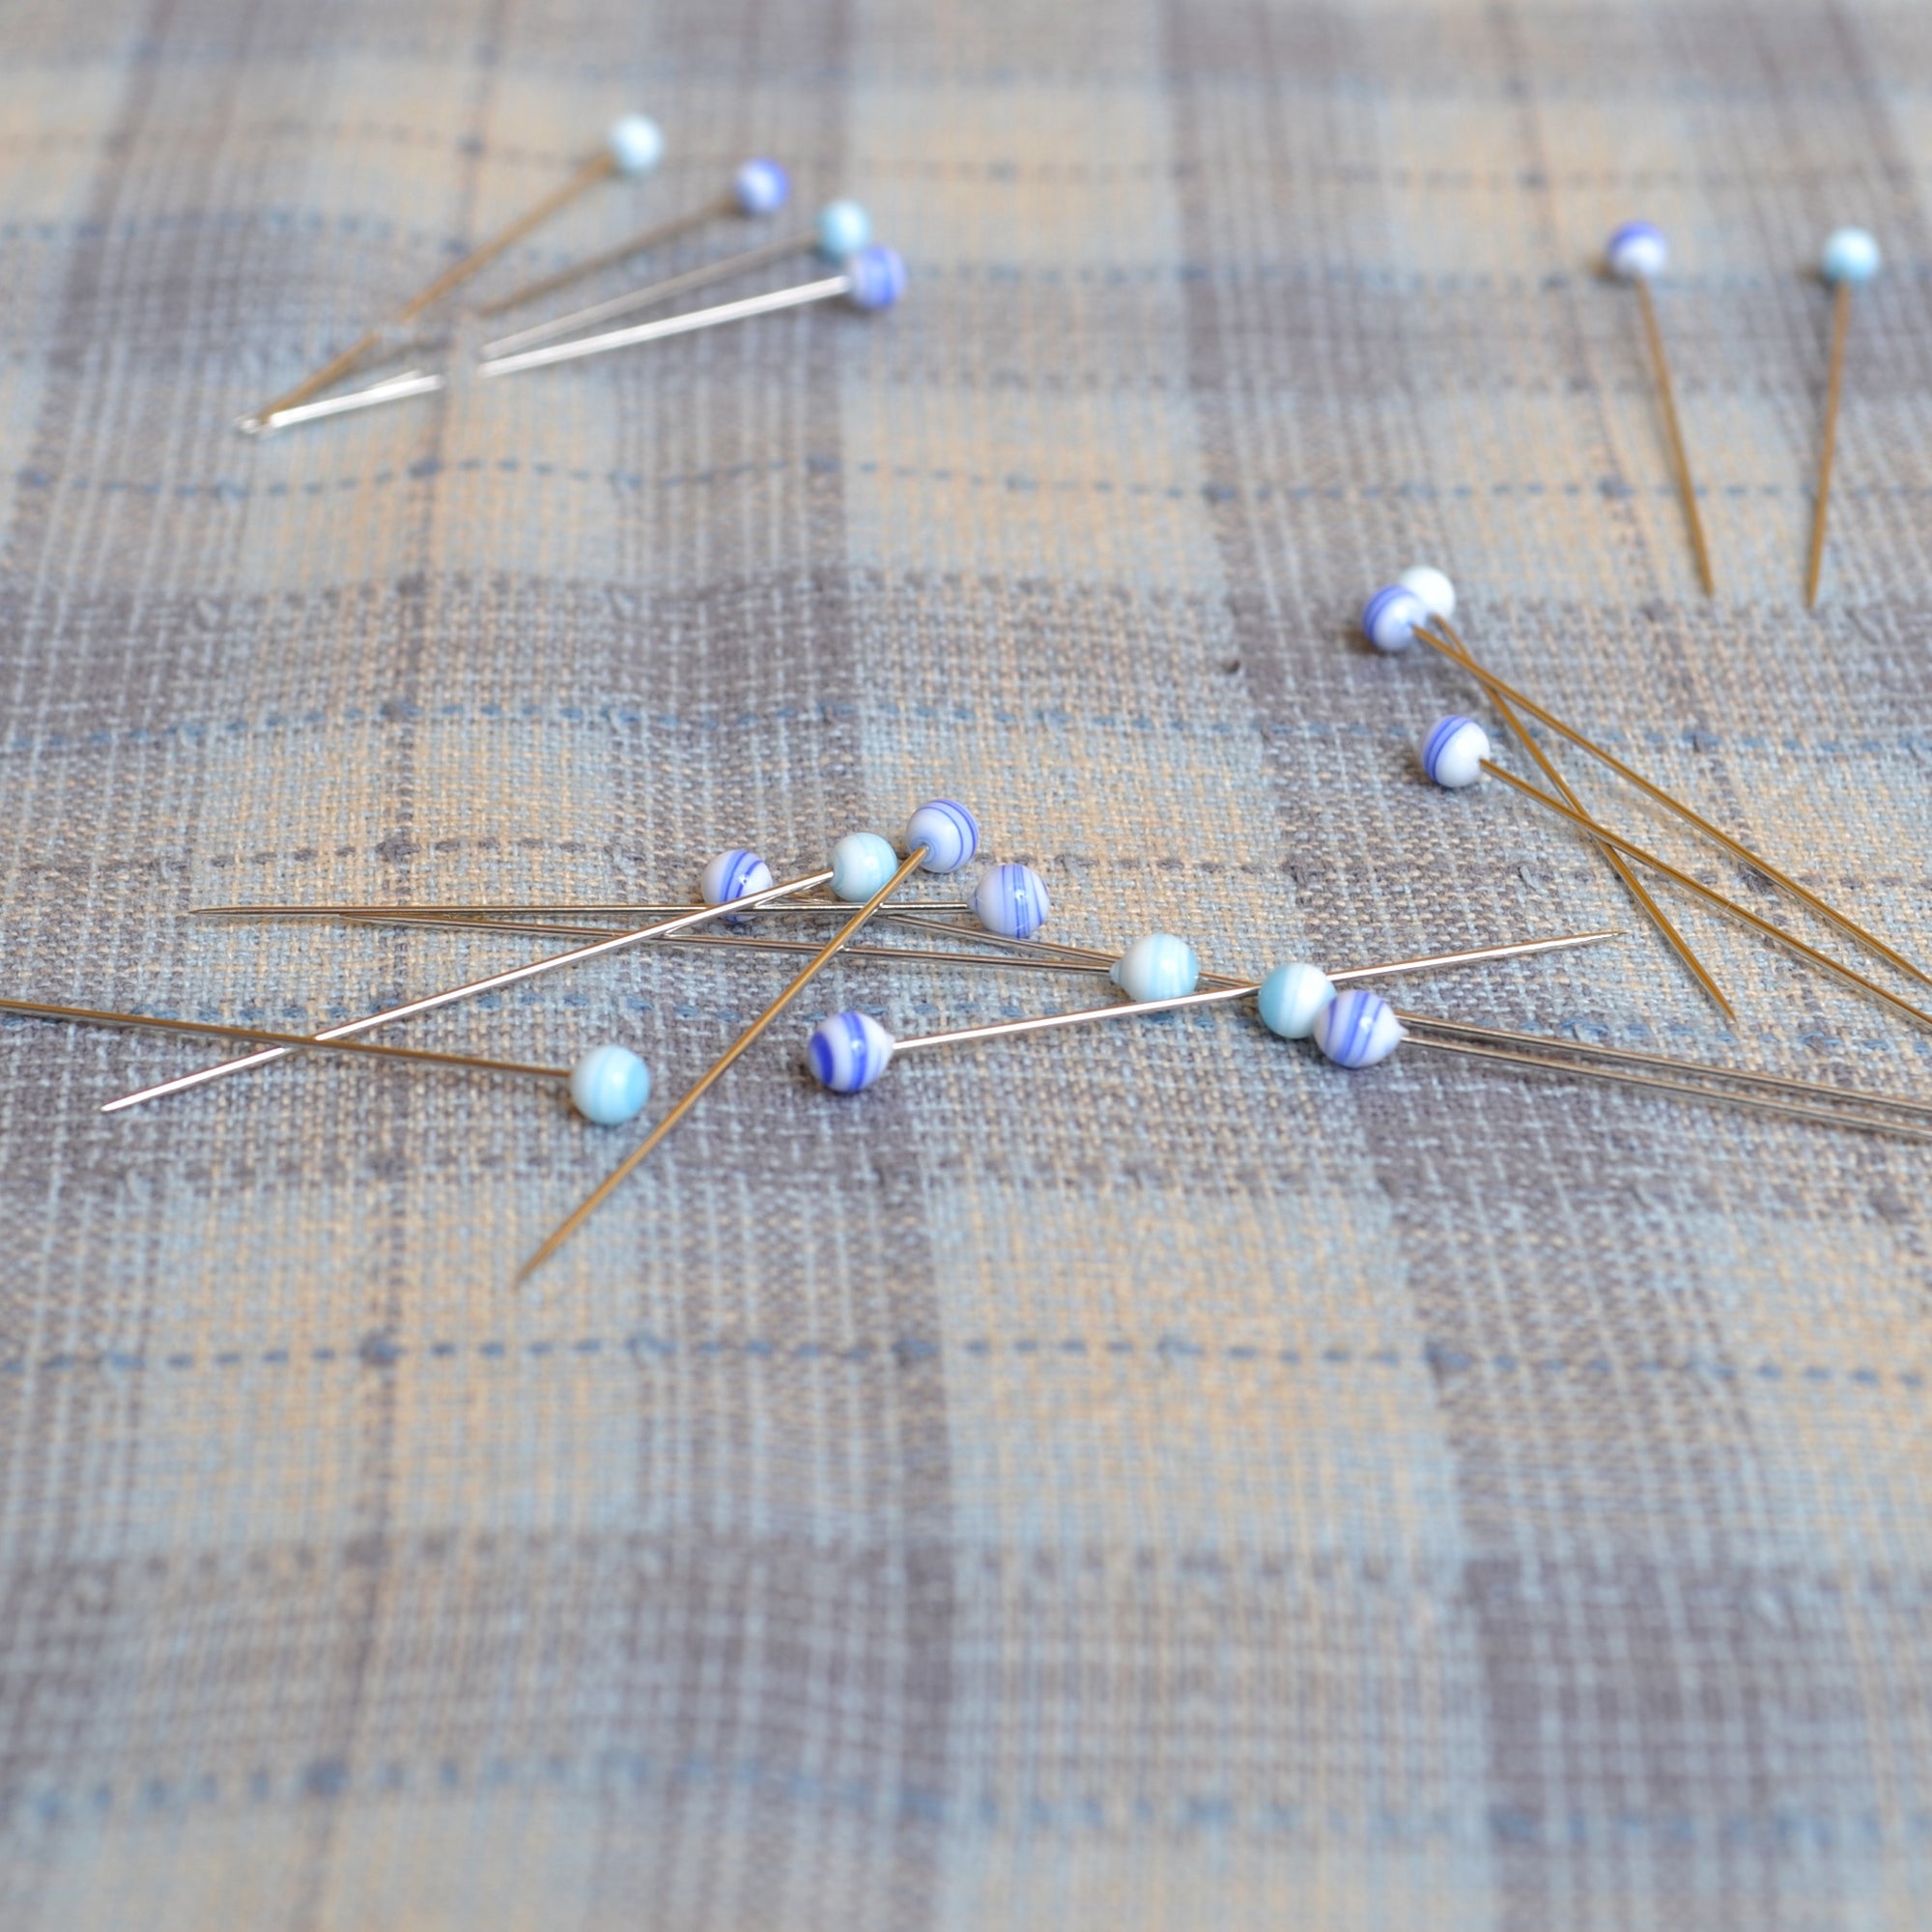 glass headed sewing pins — Blackbird Letterpress